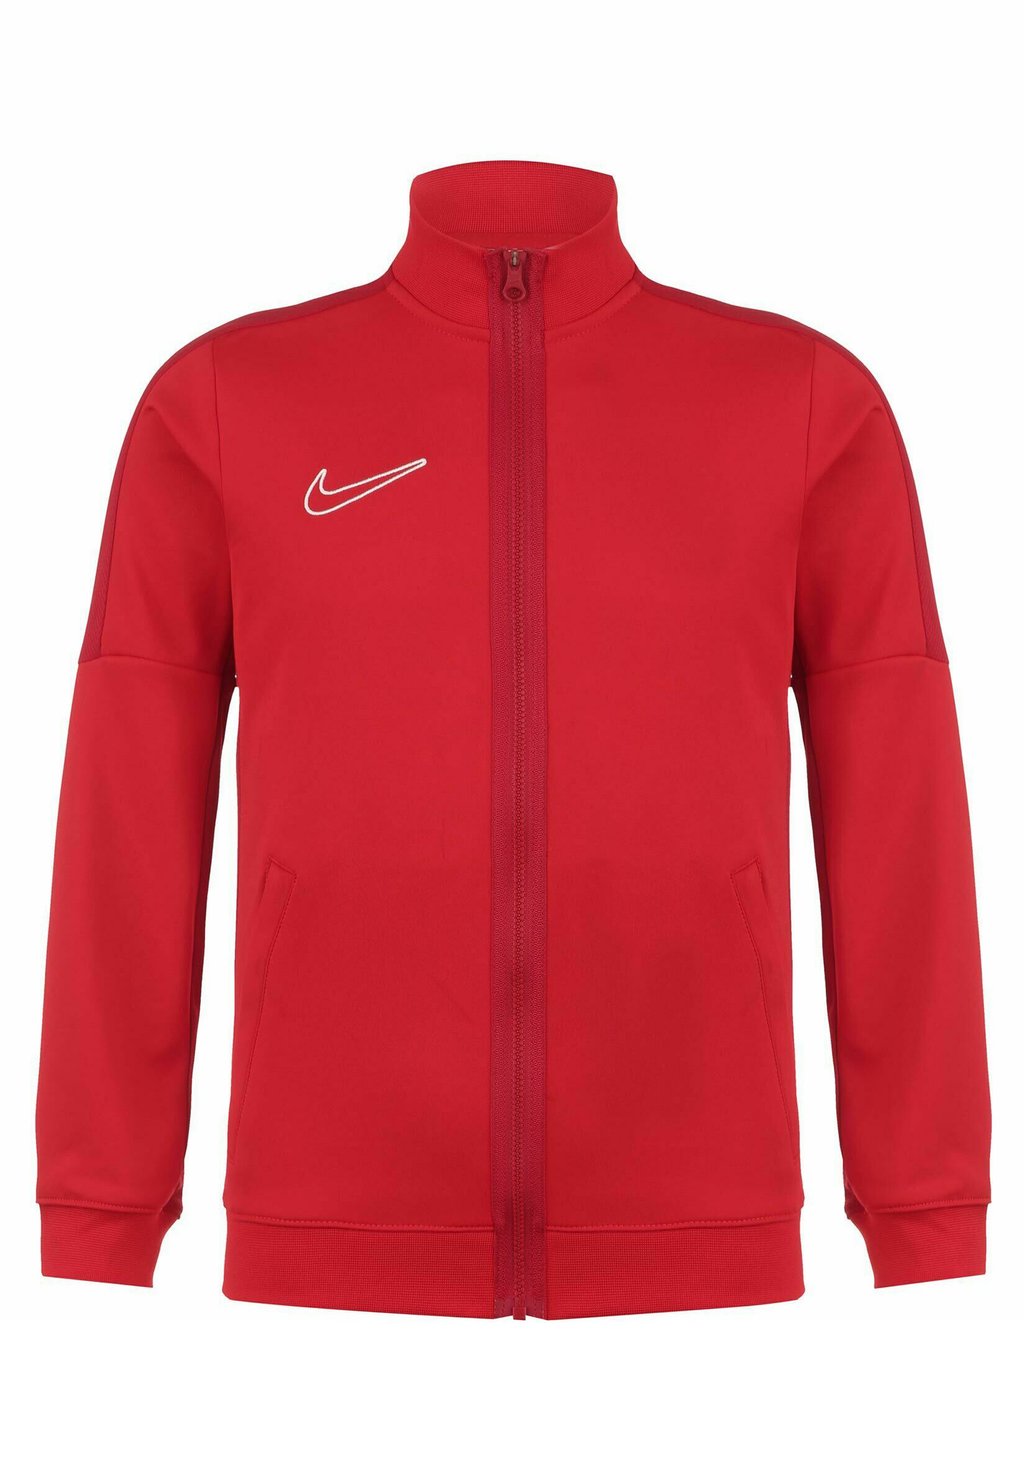 Спортивная куртка Academy Nike, цвет university red gym/red /white спортивная футболка dri fit academy 23 nike цвет university red gym red white